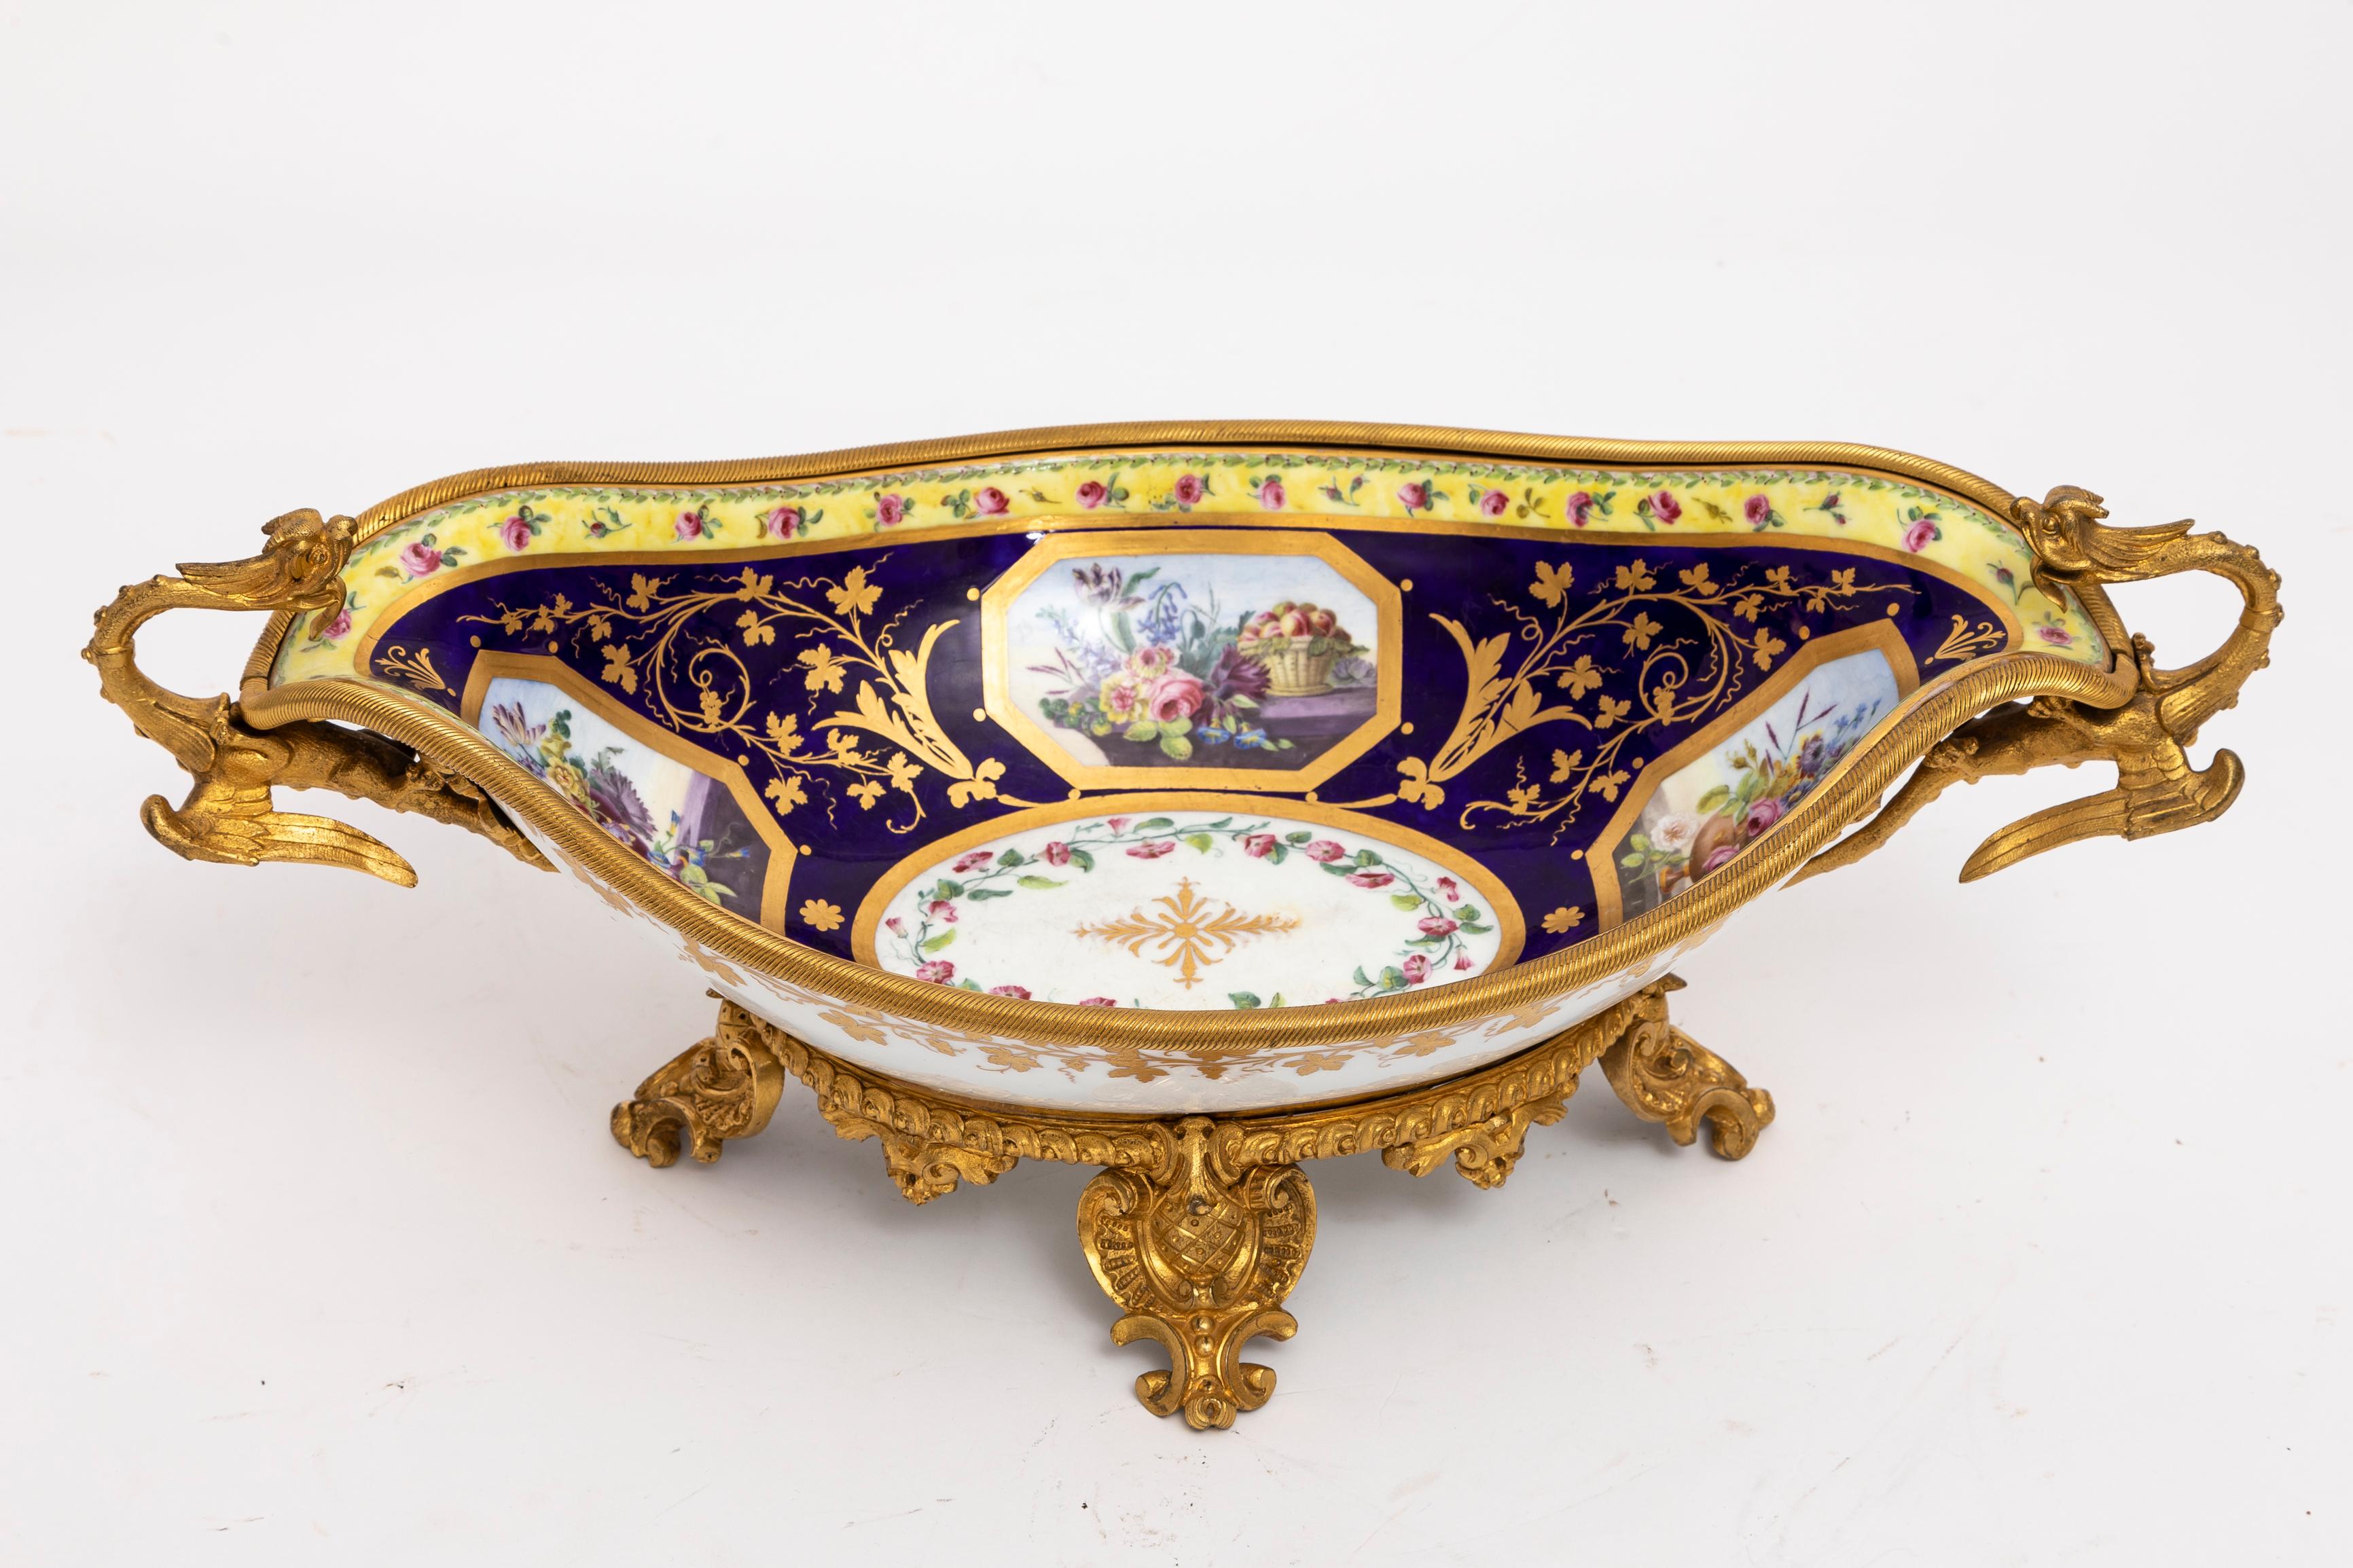 Cet exquis centre de table en porcelaine de Sèvres du XVIIIe siècle peint et décoré par Jacques Pierre, orné de ravissantes poignées de dragon en bronze doré du début du XIXe siècle et de montures en bronze doré de la plus haute qualité, est un